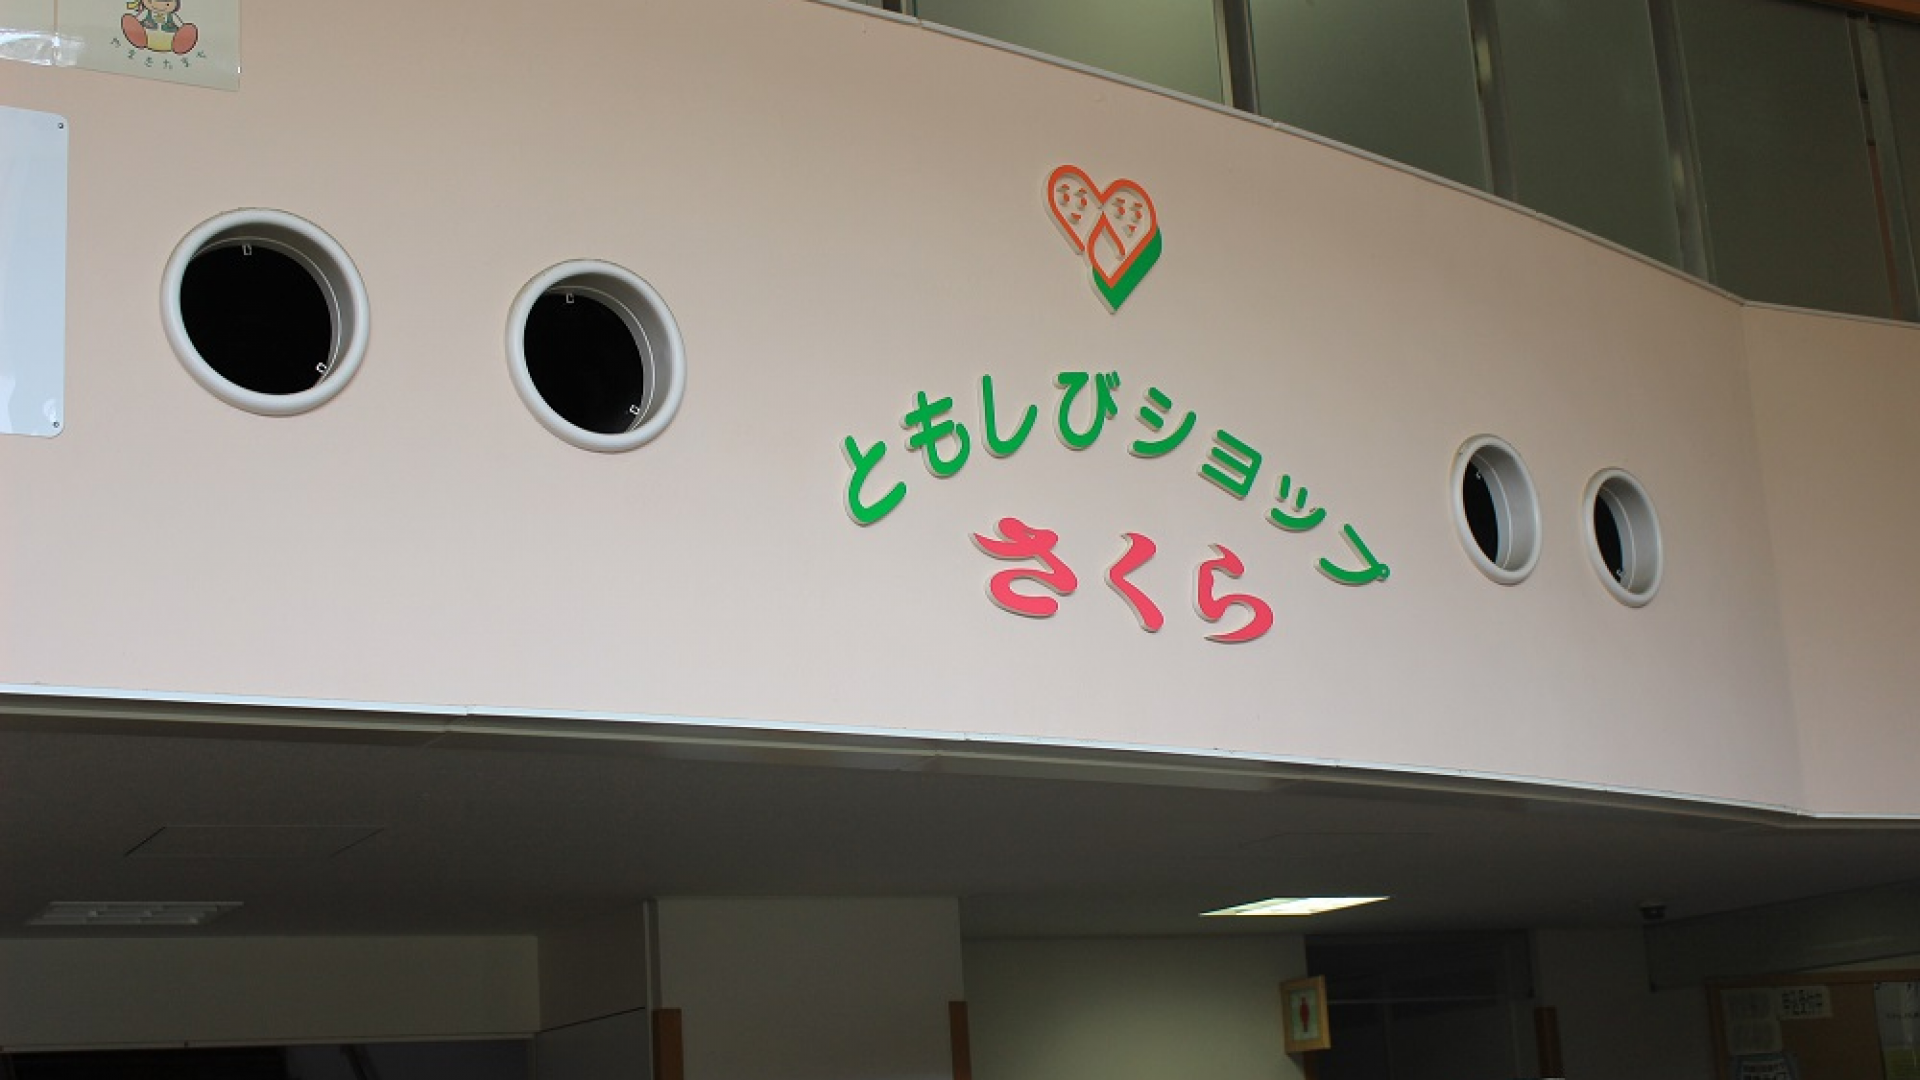 Trung tâm Phúc lợi và Sức khỏe Yamakita-cho, Cửa hàng đèn Sakura